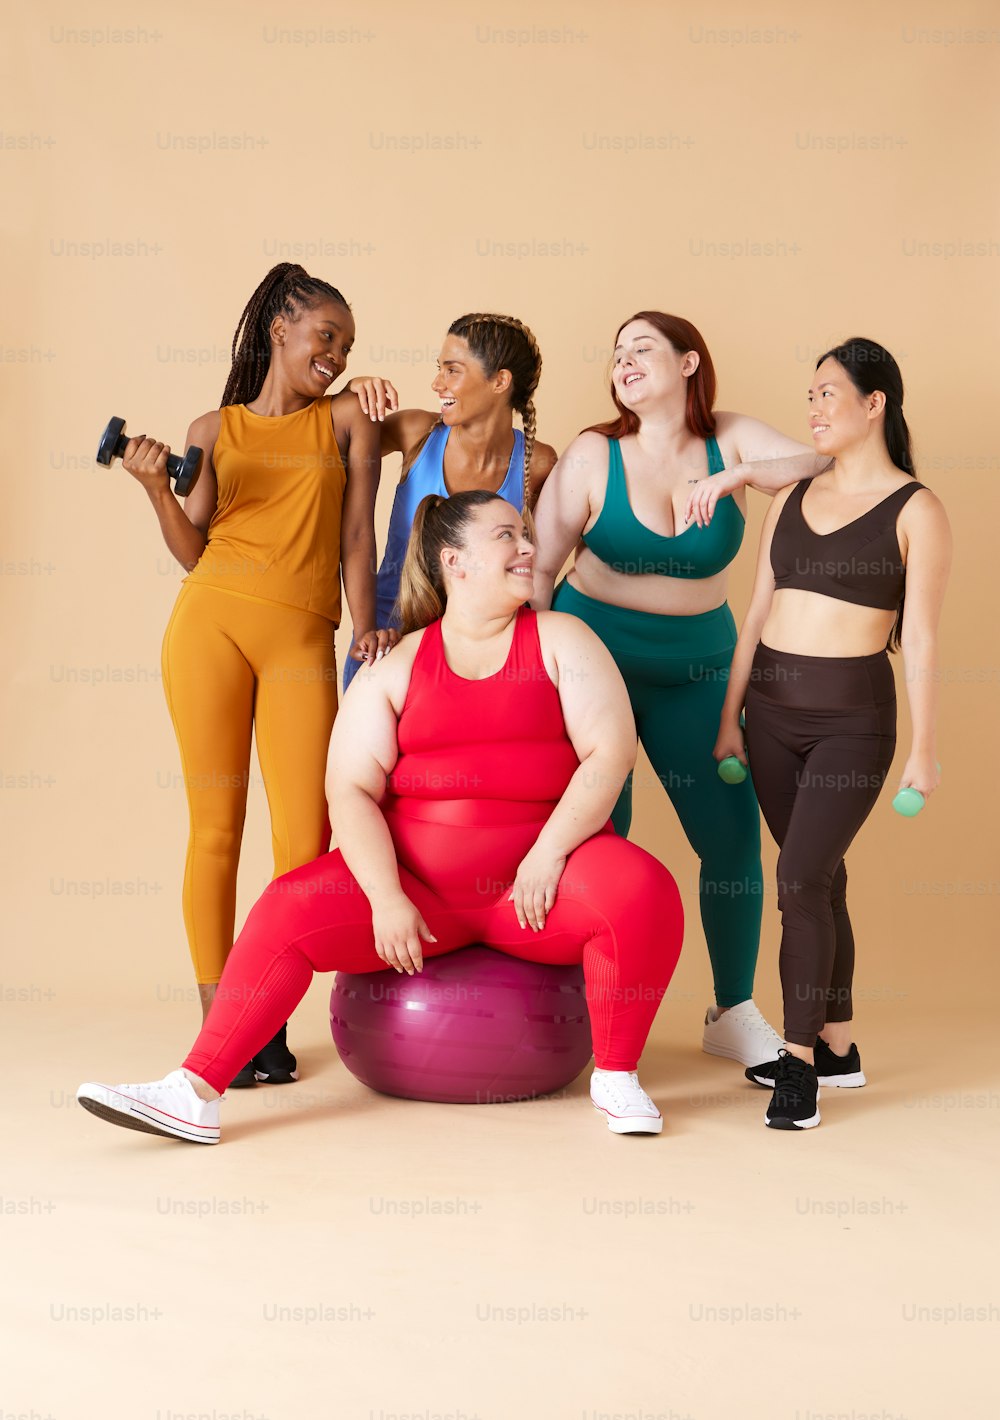 Un groupe de femmes posant pour une photo sur un ballon d’exercice